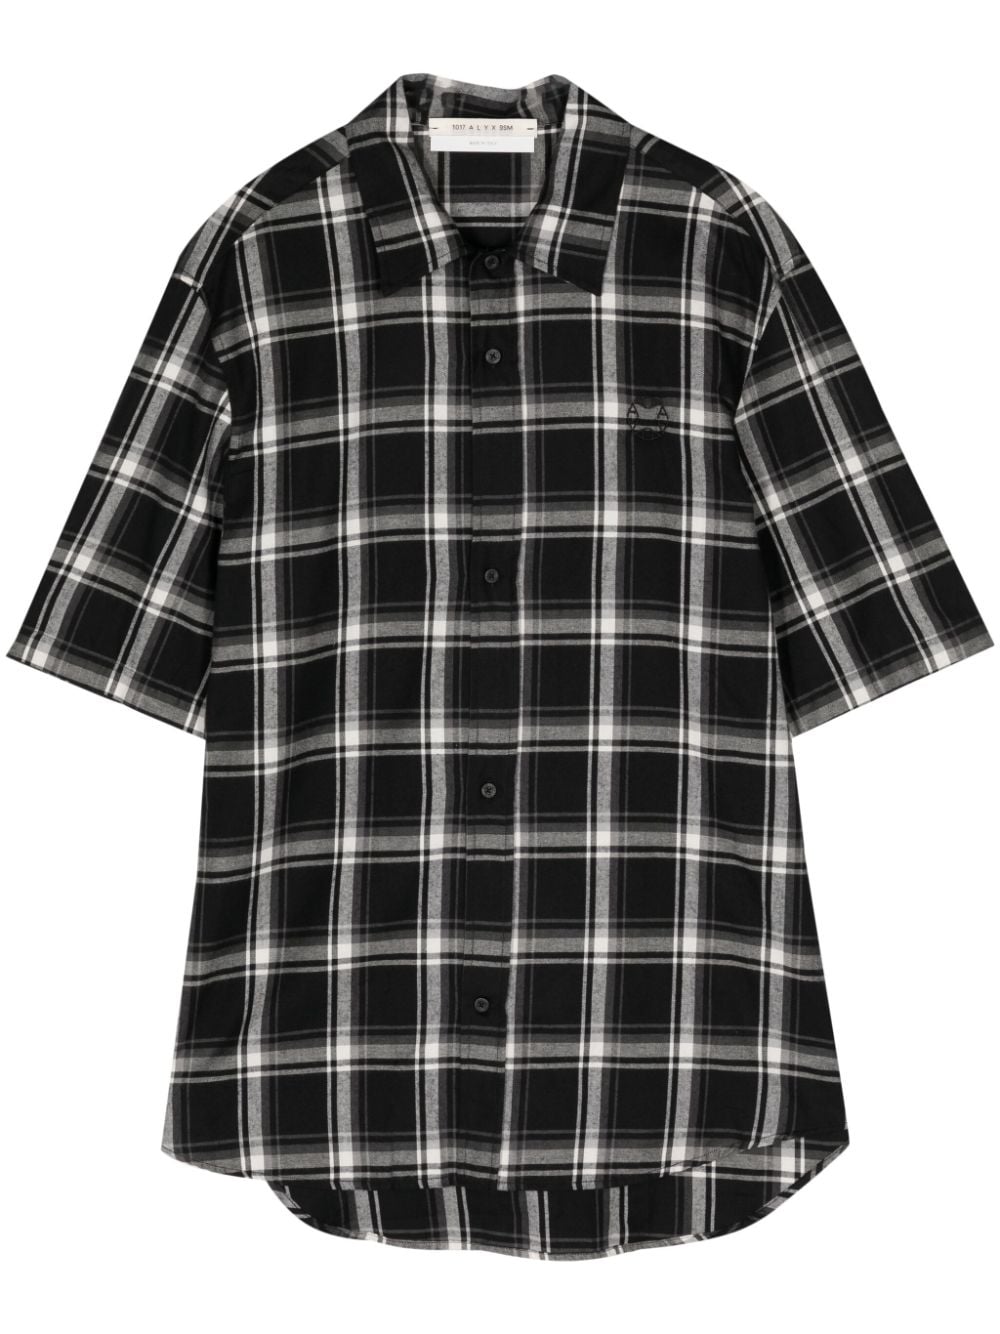 1017 ALYX 9SM logo-embroidered plaid-pattern shirt - Black von 1017 ALYX 9SM